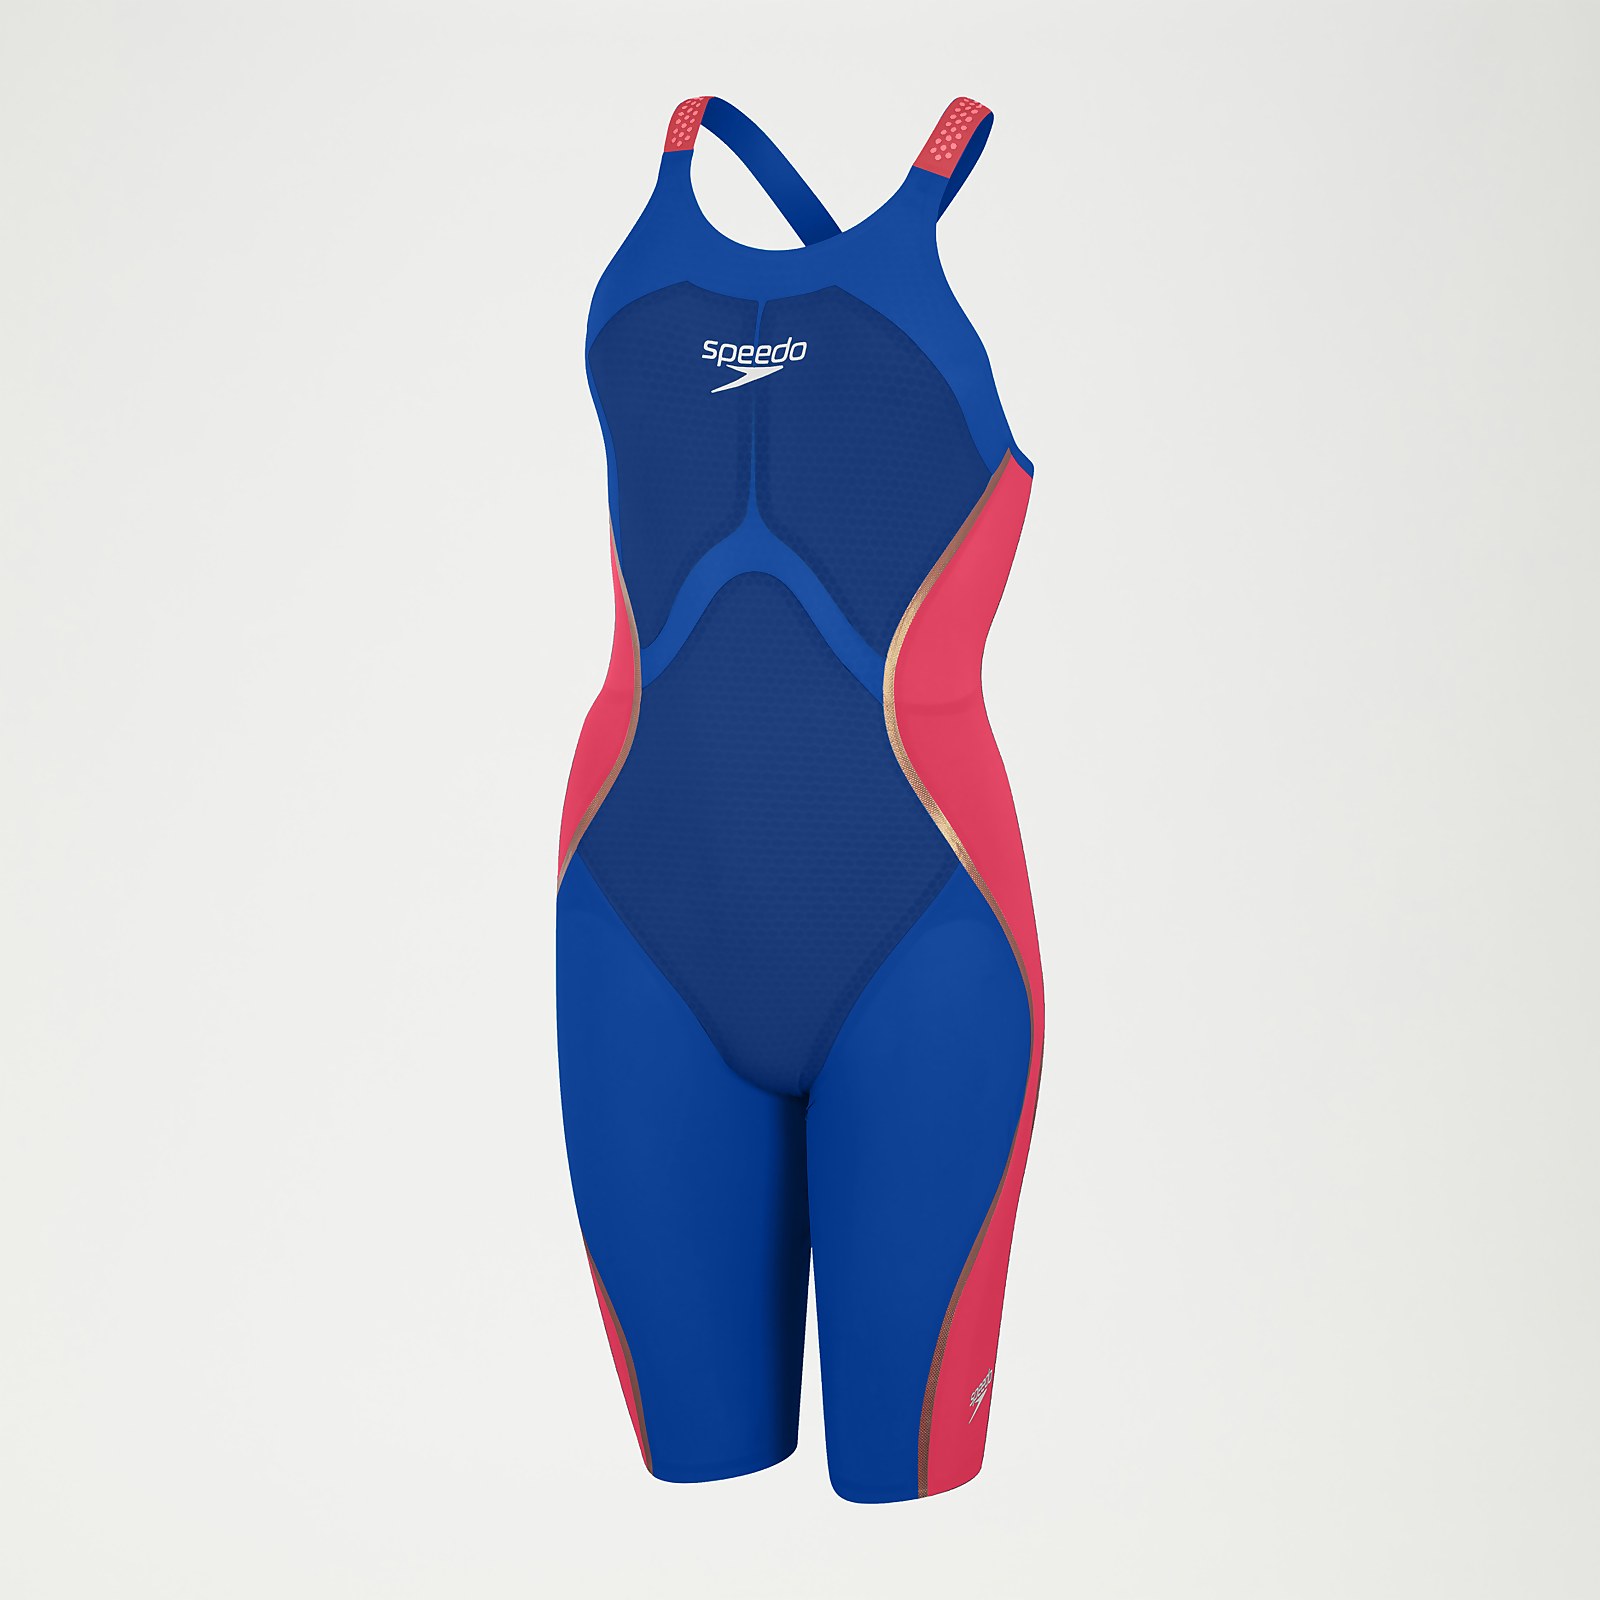 Fastskin LZR Pure Intent Schwimmanzug mit offenem Rücken Blau/Rot für Damen